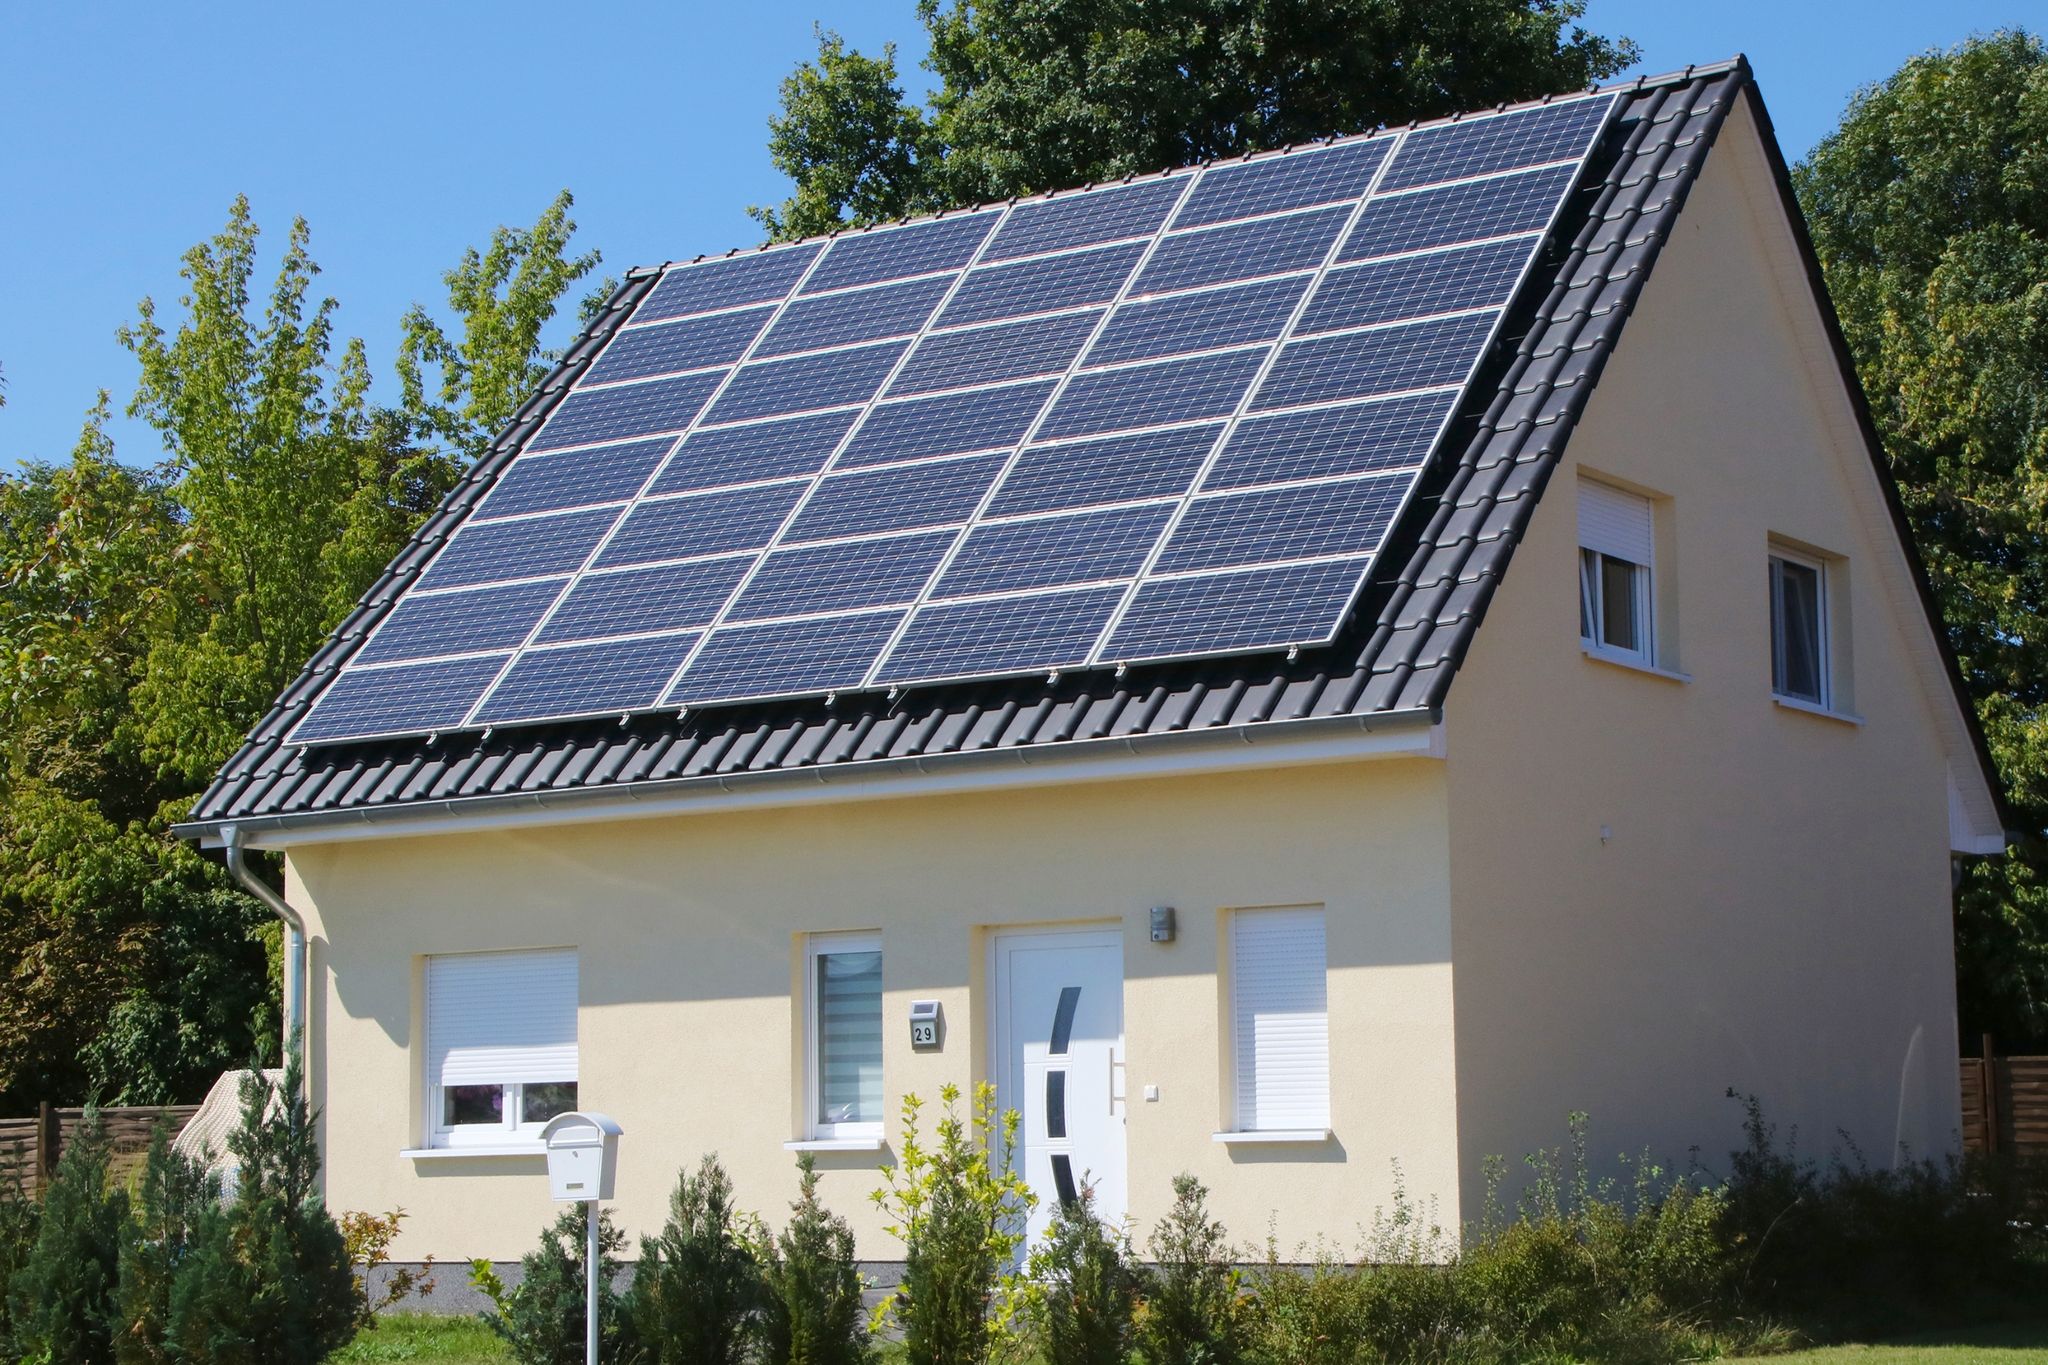 Sonnenstrom vom Dach: Im Laufe der Zeit haben sich einige Irrtümer in Bezug auf Photovoltaik-Anlagen in das allgemeine Bewusstsein geschlichen.